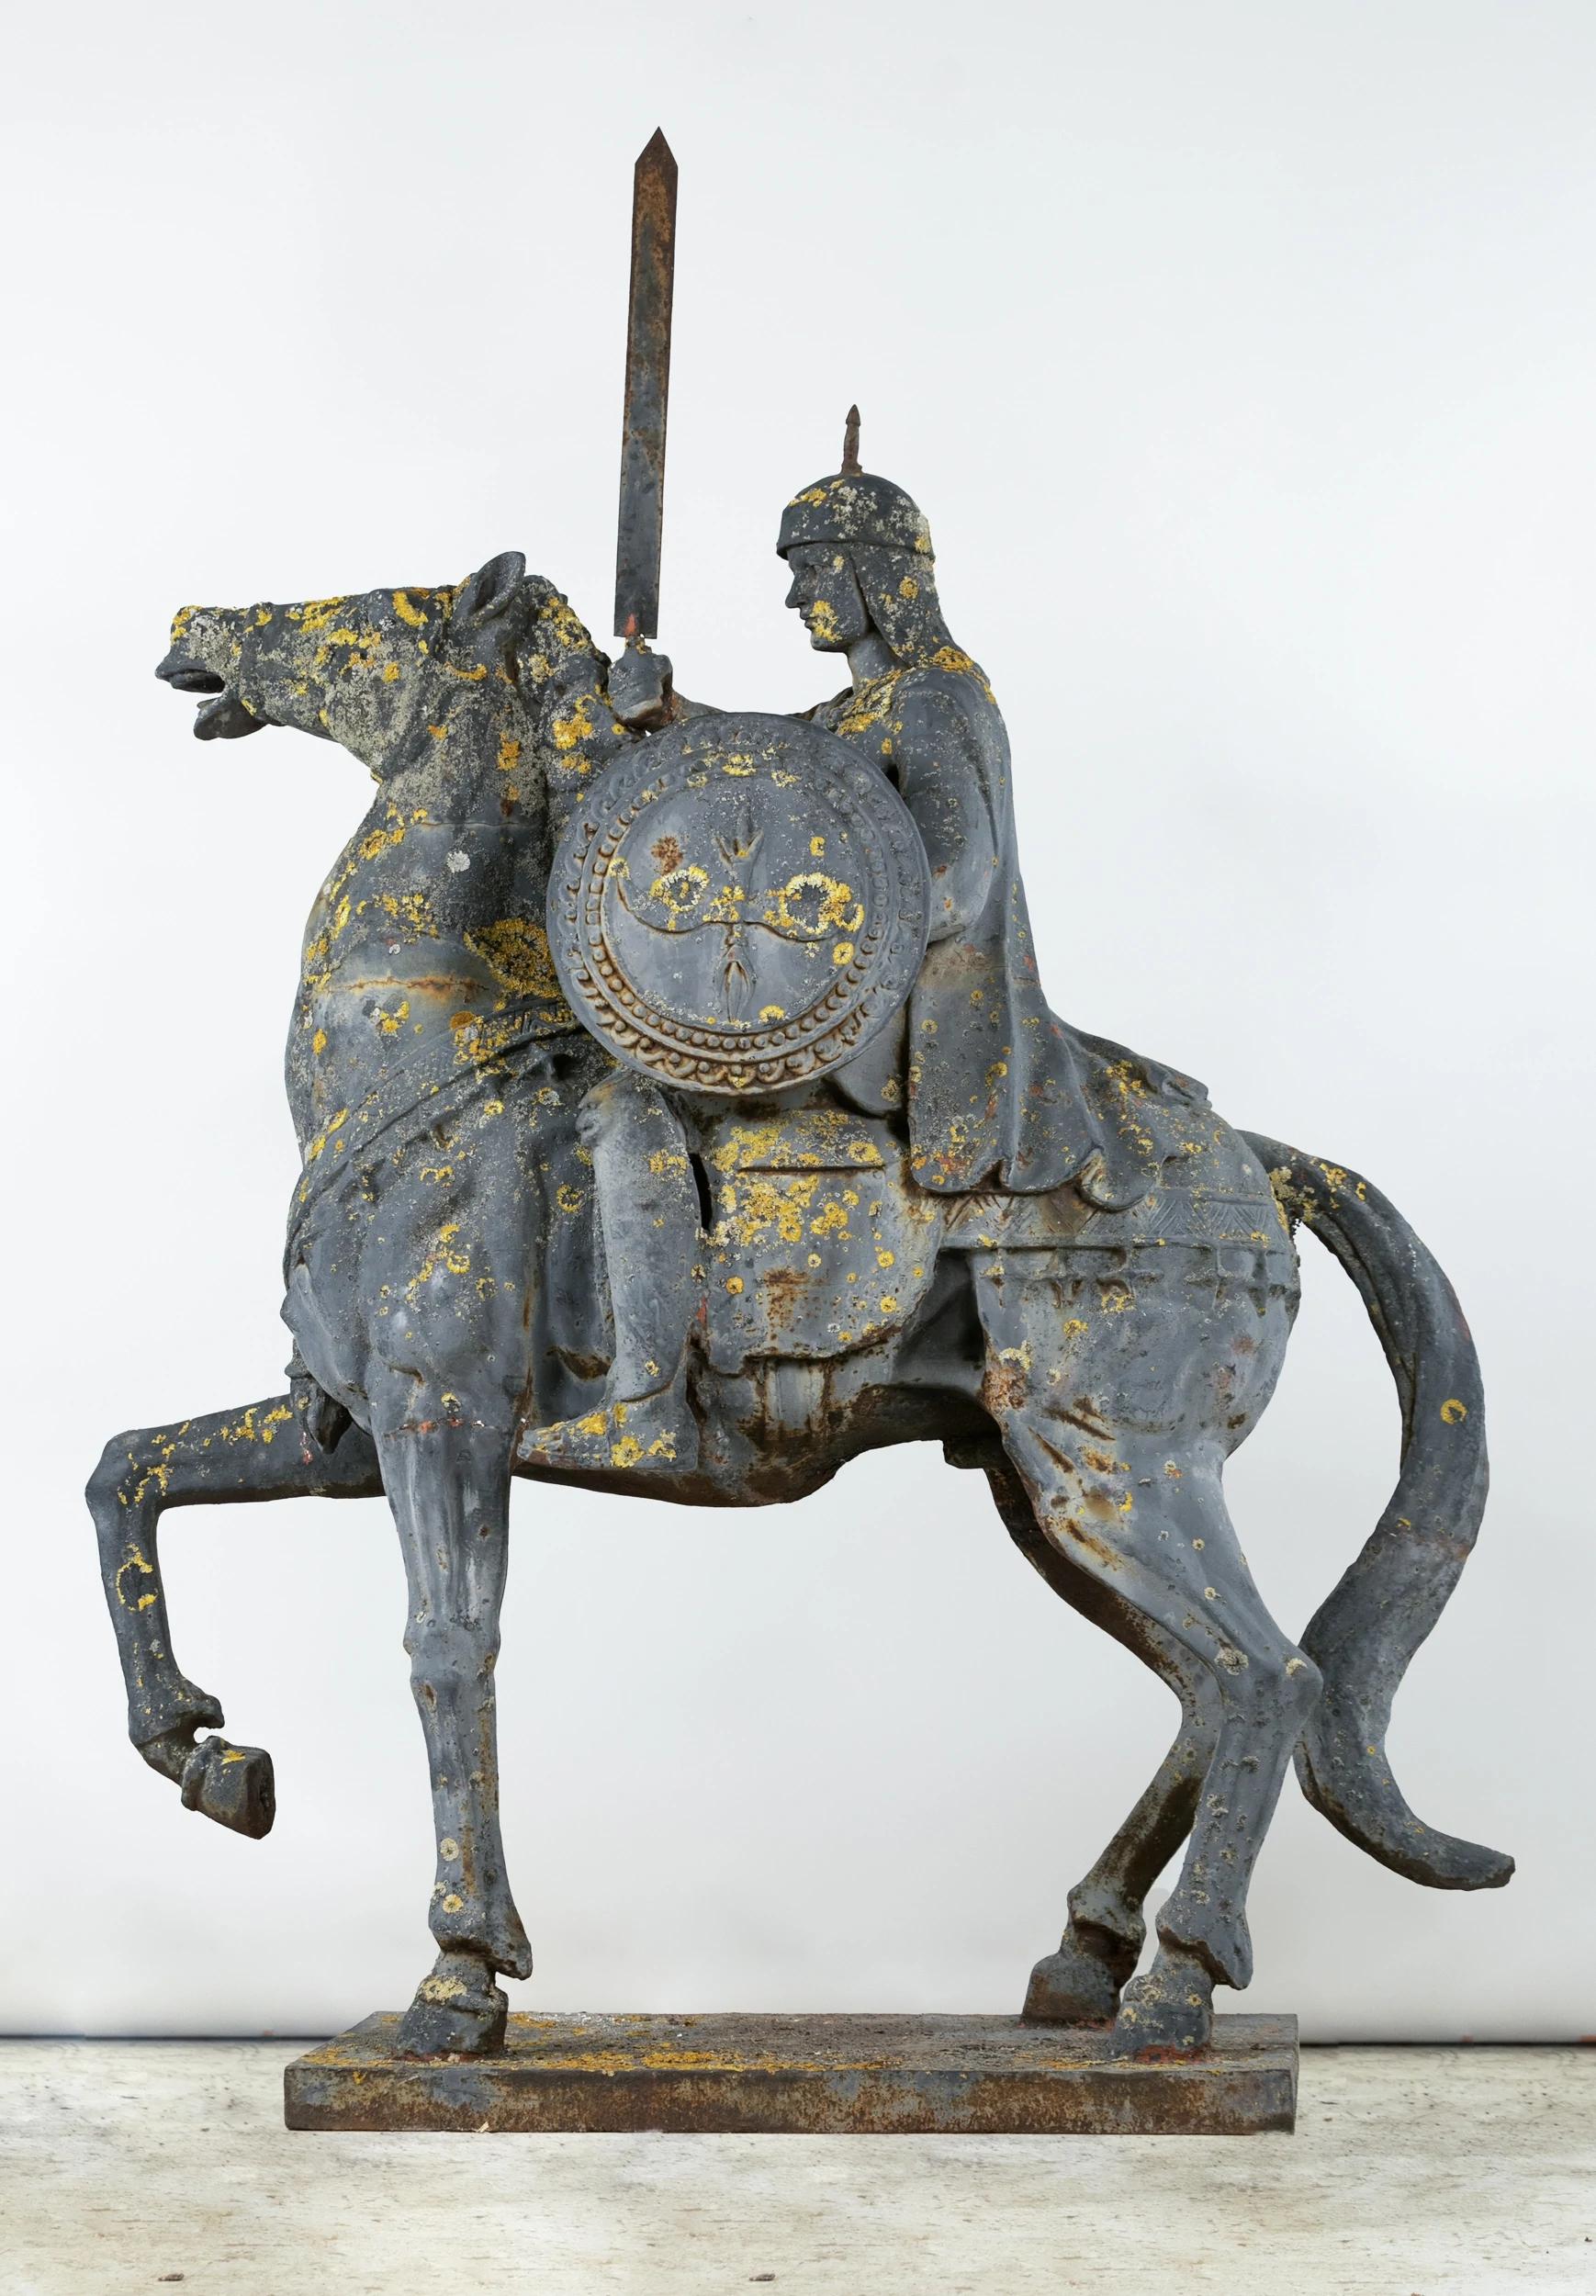 Two Ottoman horsemen, large cast-iron matching garden statues.